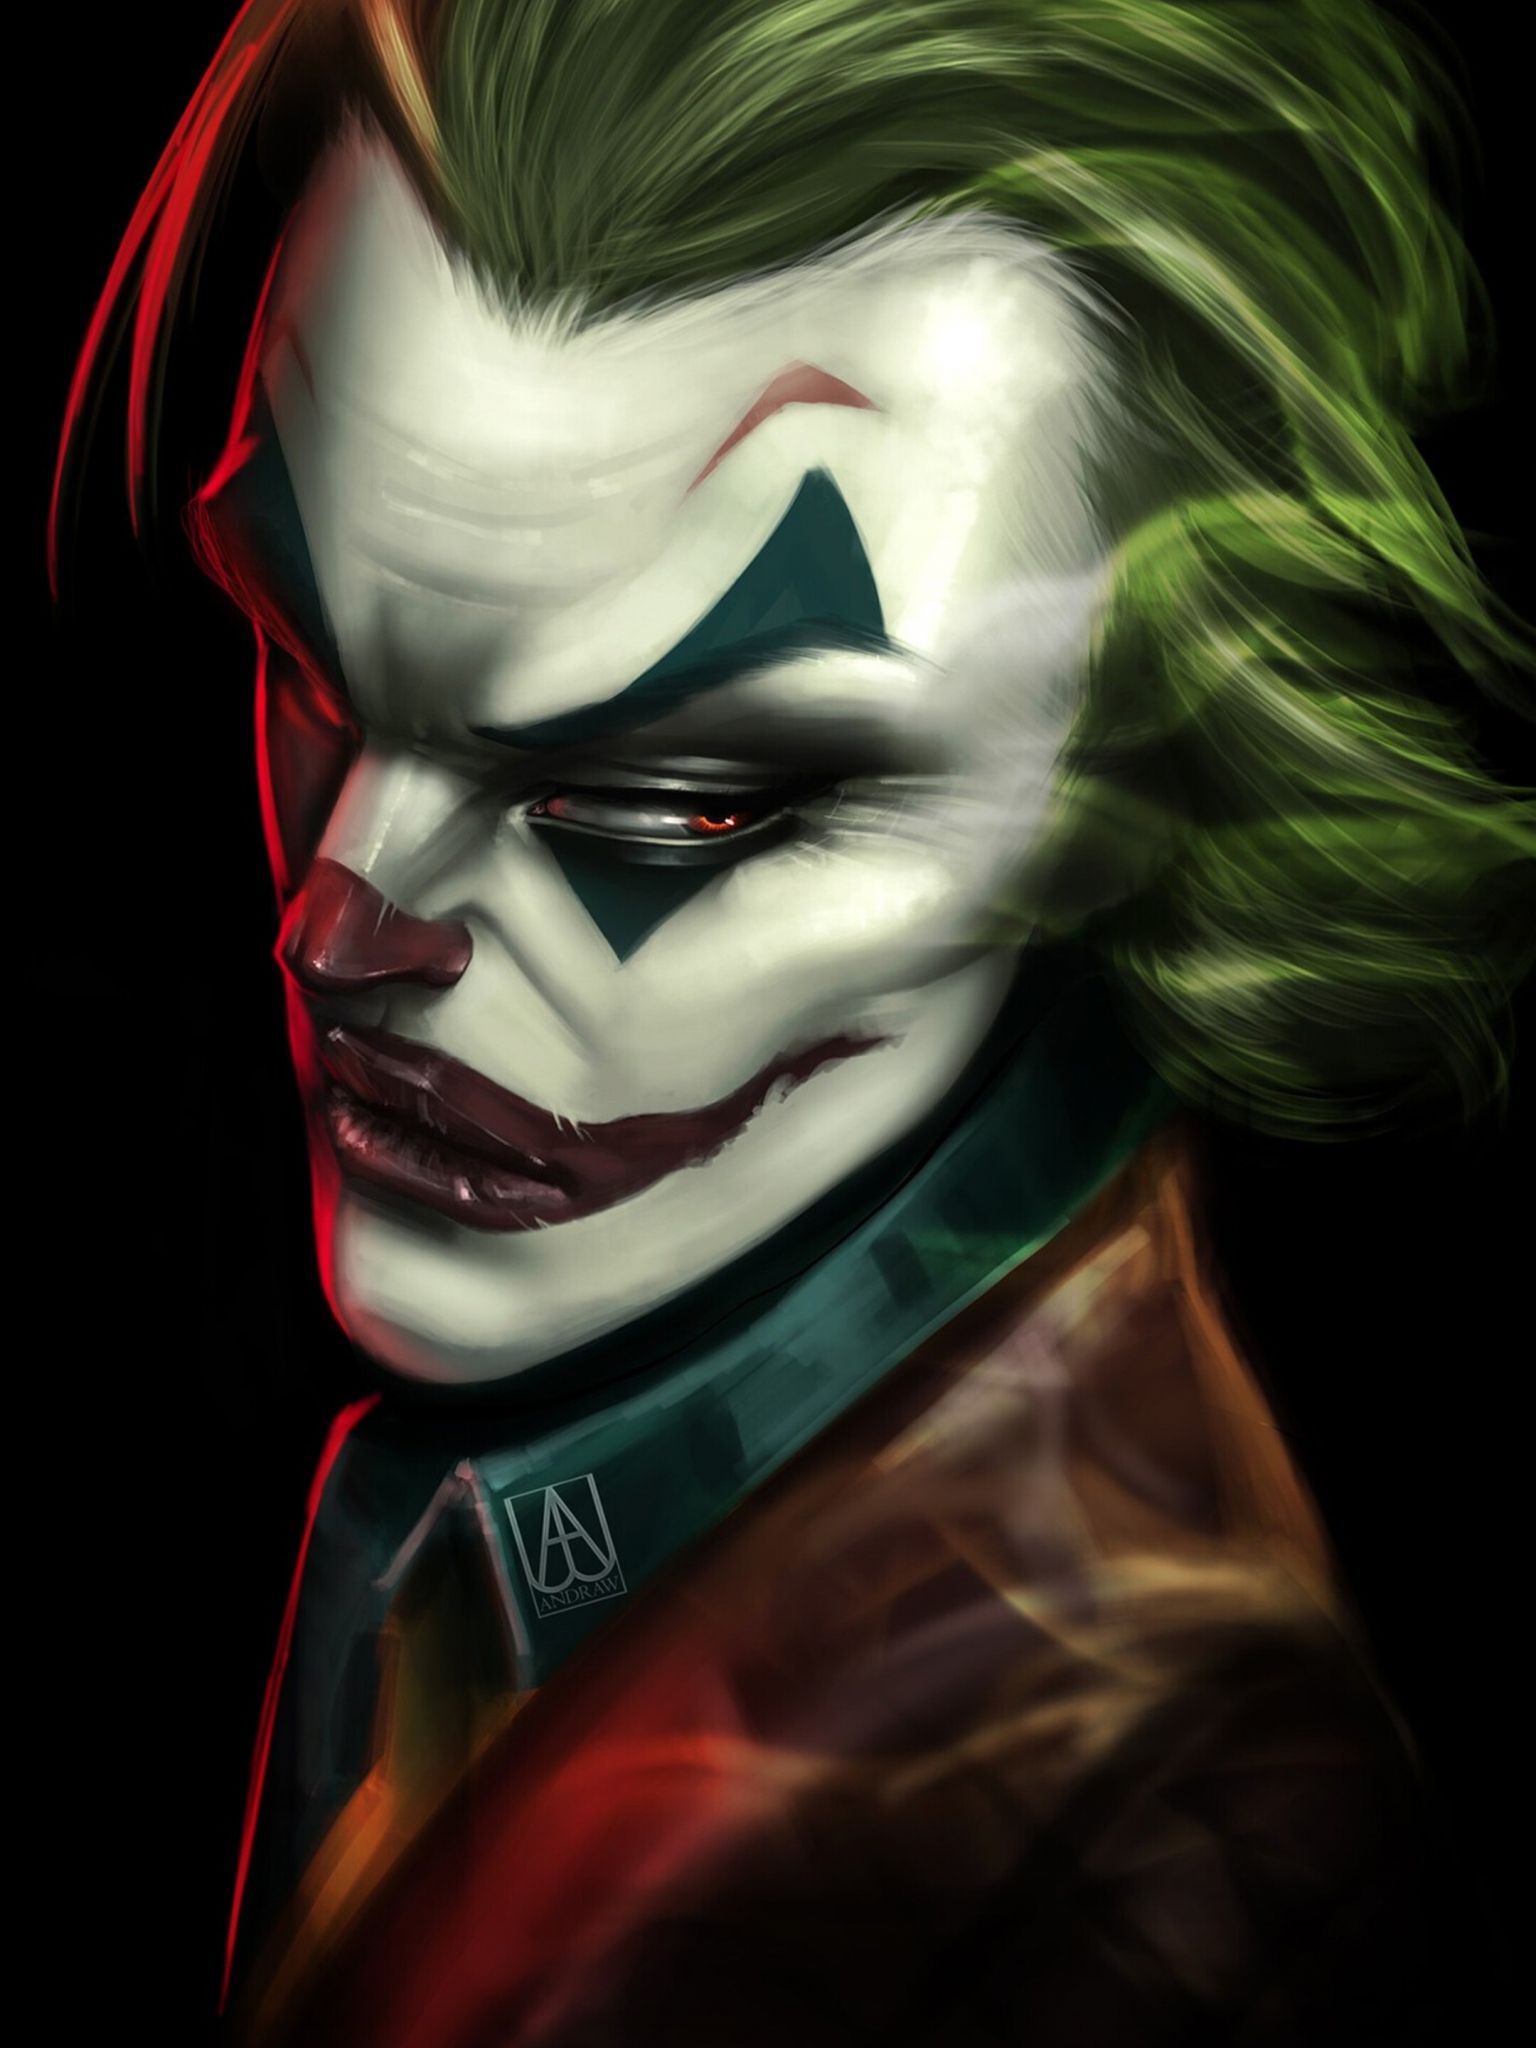 Free download Joker 2019 Movie Art 4K Wallpaper 5694 [2160x3840] for your Desktop, Mobile & Tablet. Explore Joker 2019 4K Wallpaper. Joker 2019 4K Wallpaper, Joker 2019 Wallpaper, Joker HD 2019 Wallpaper